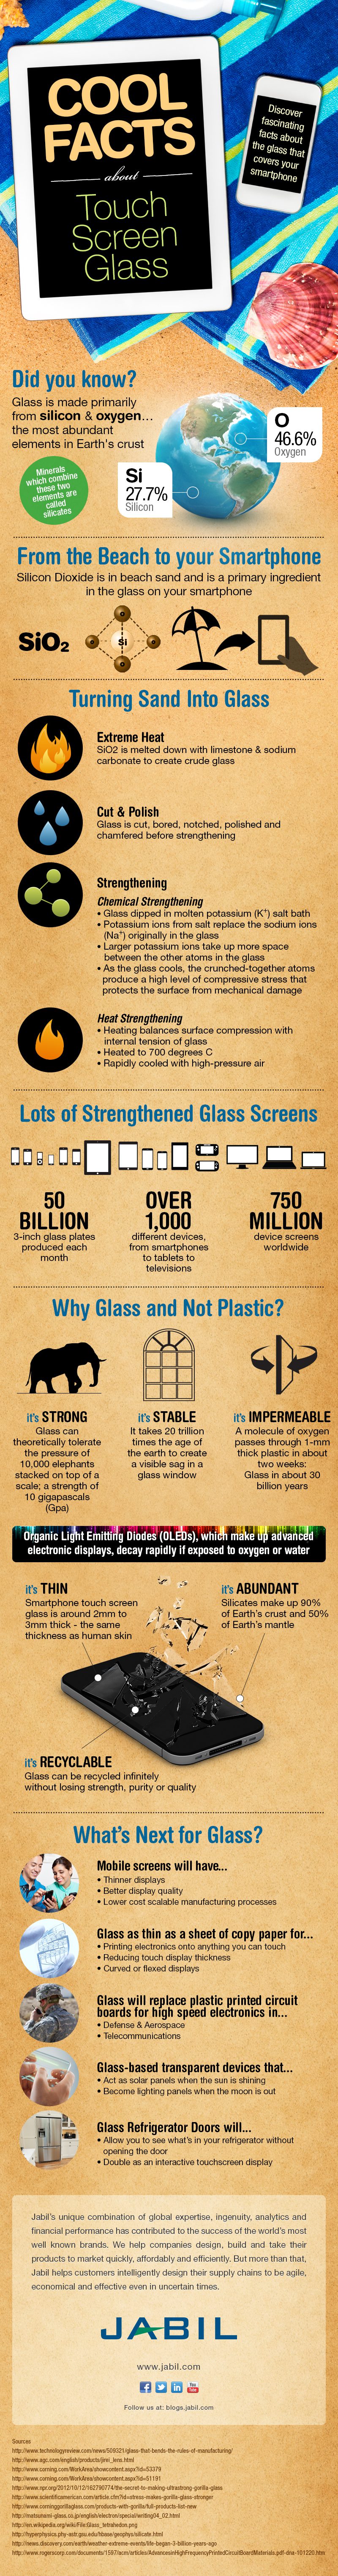 Who Invented Gorilla Glass